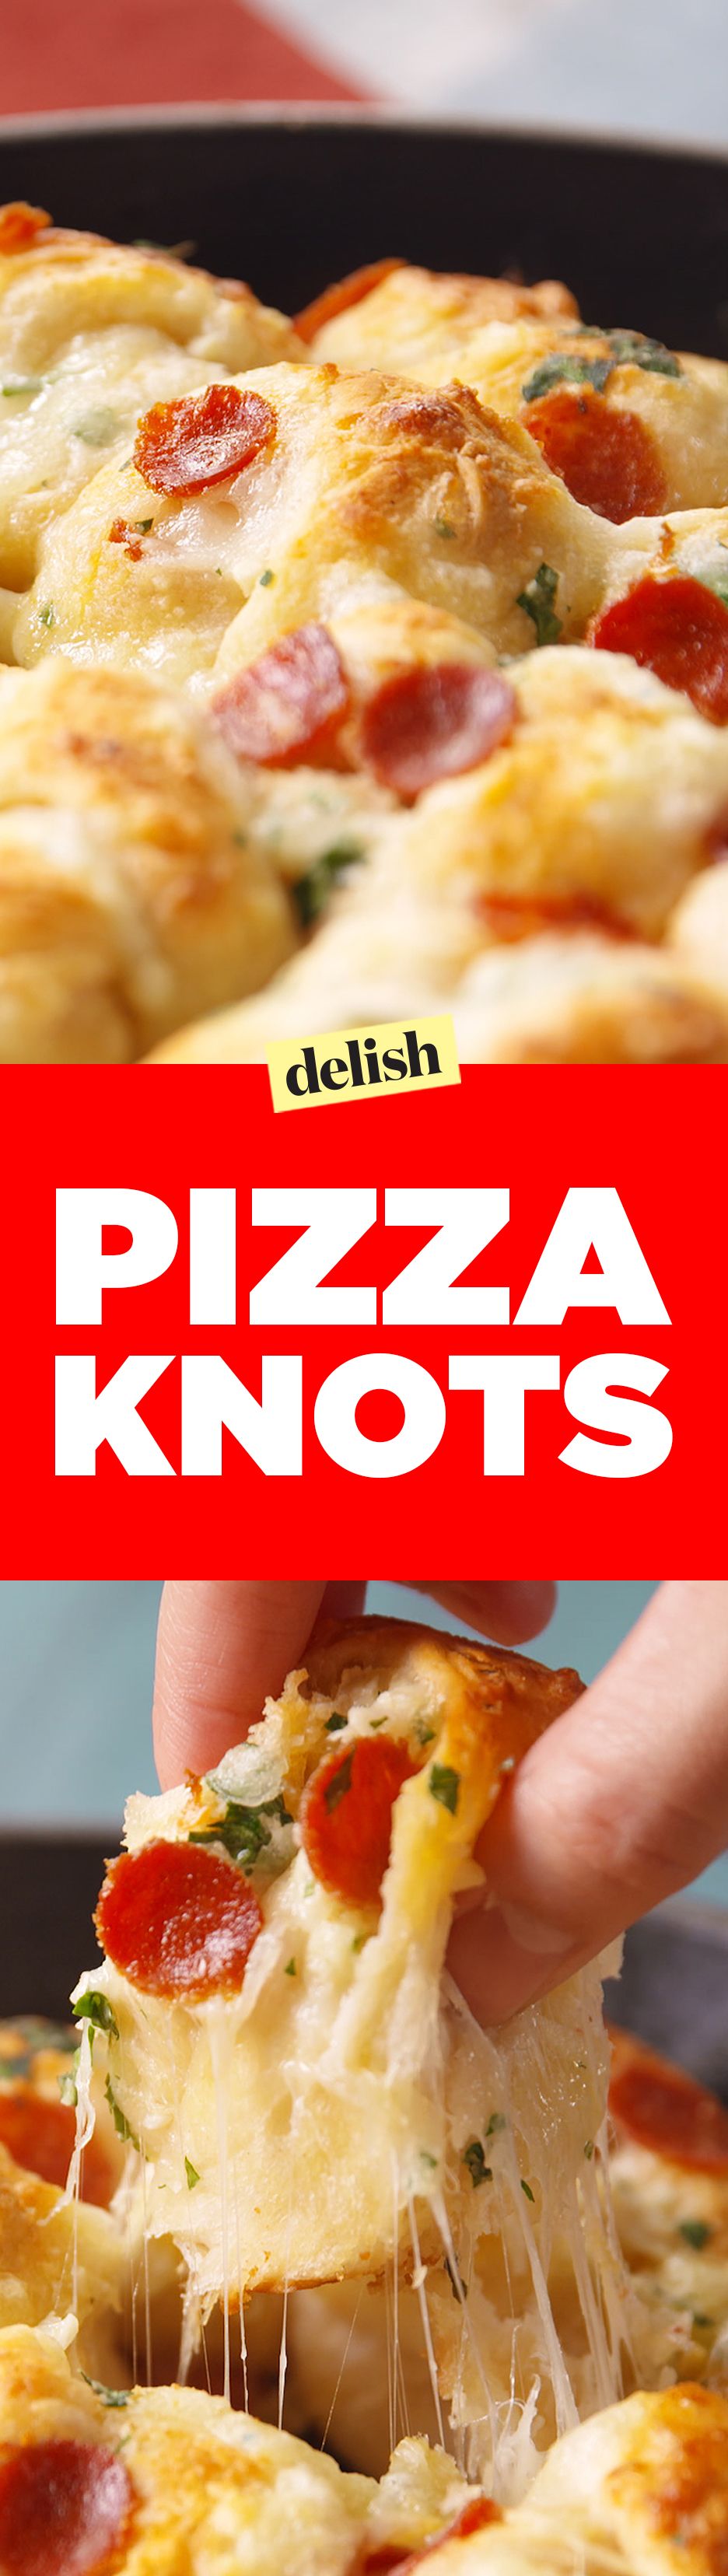 Pizza Knots Pinterest